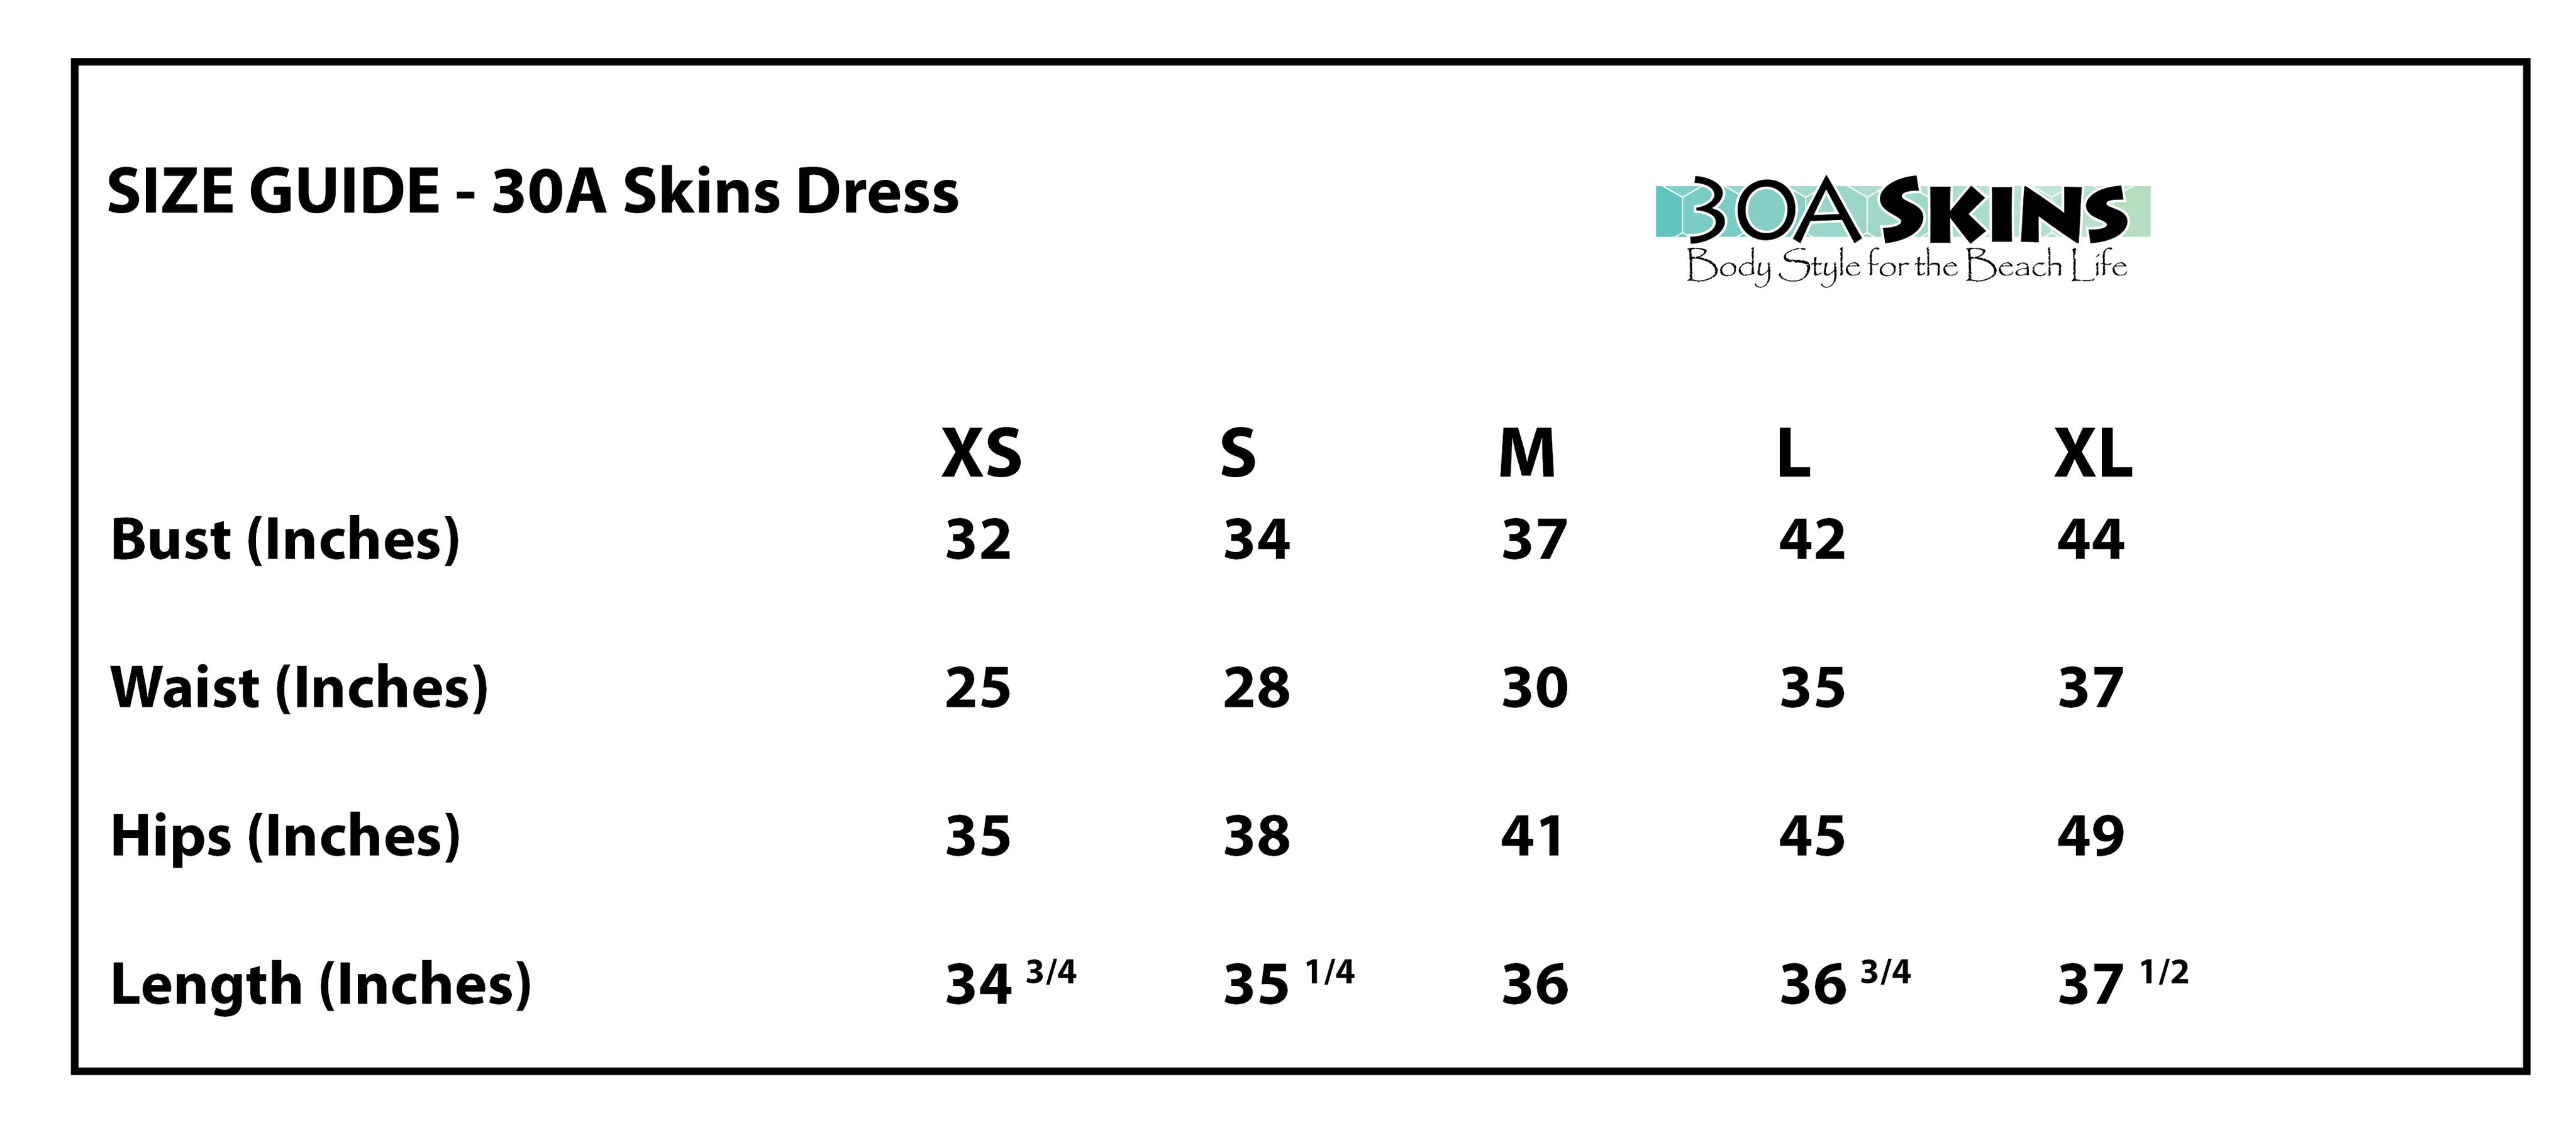 30A skins dress sizing chart